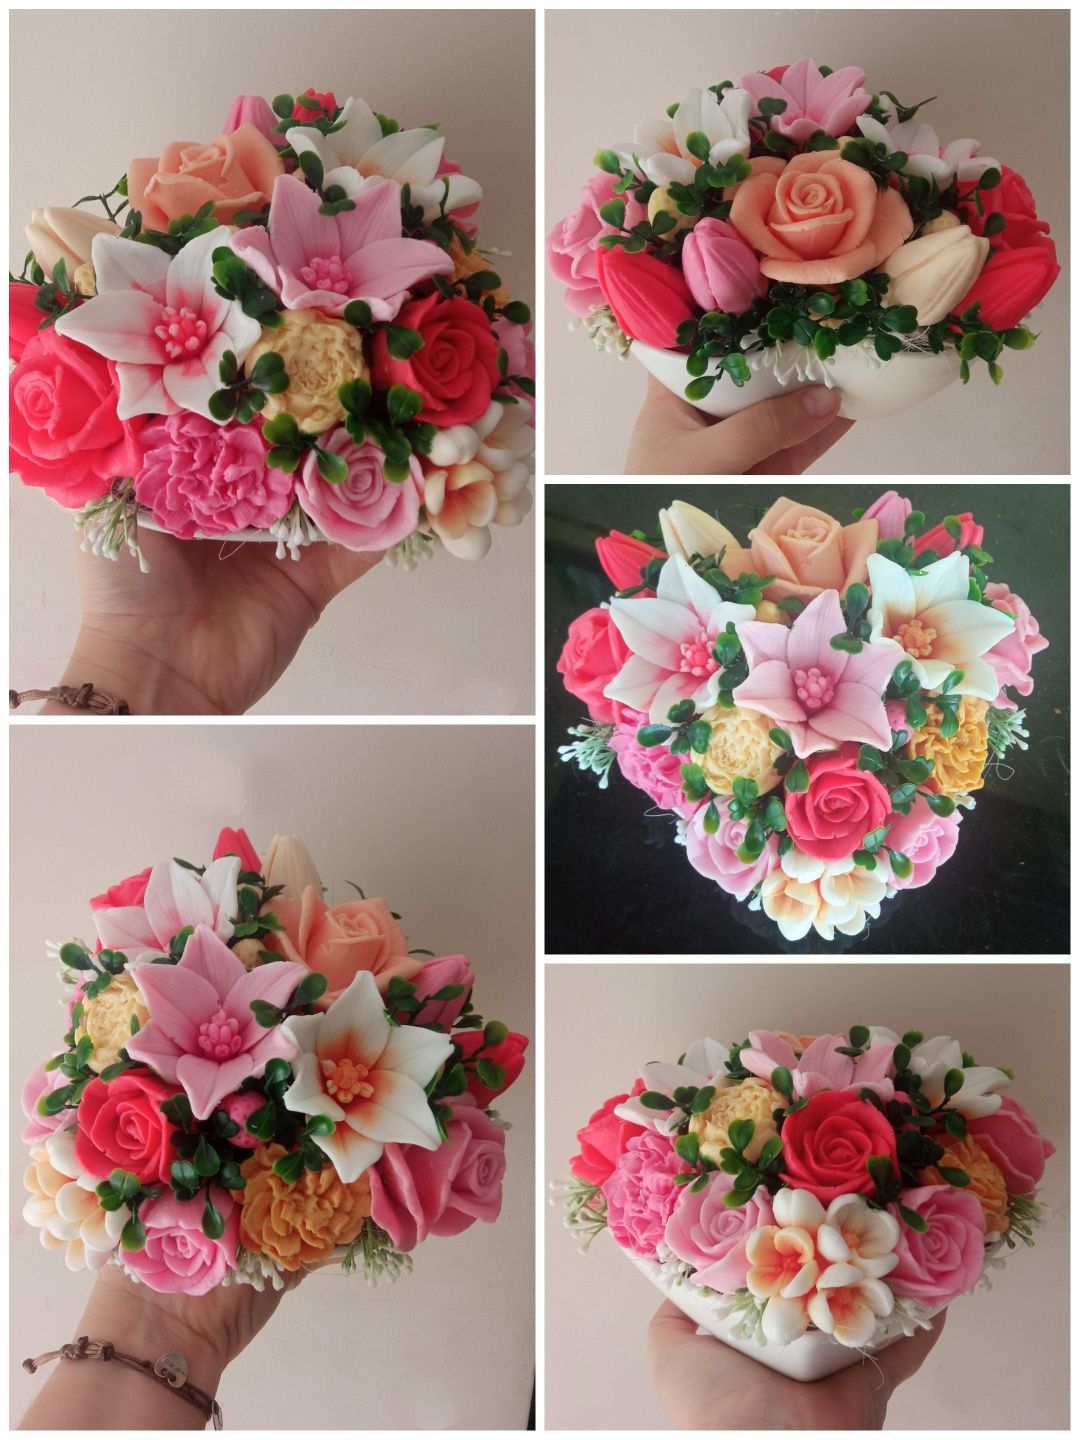 Flower box serce kwiaty mydlane bukiet urodziny komunia podziękowanie